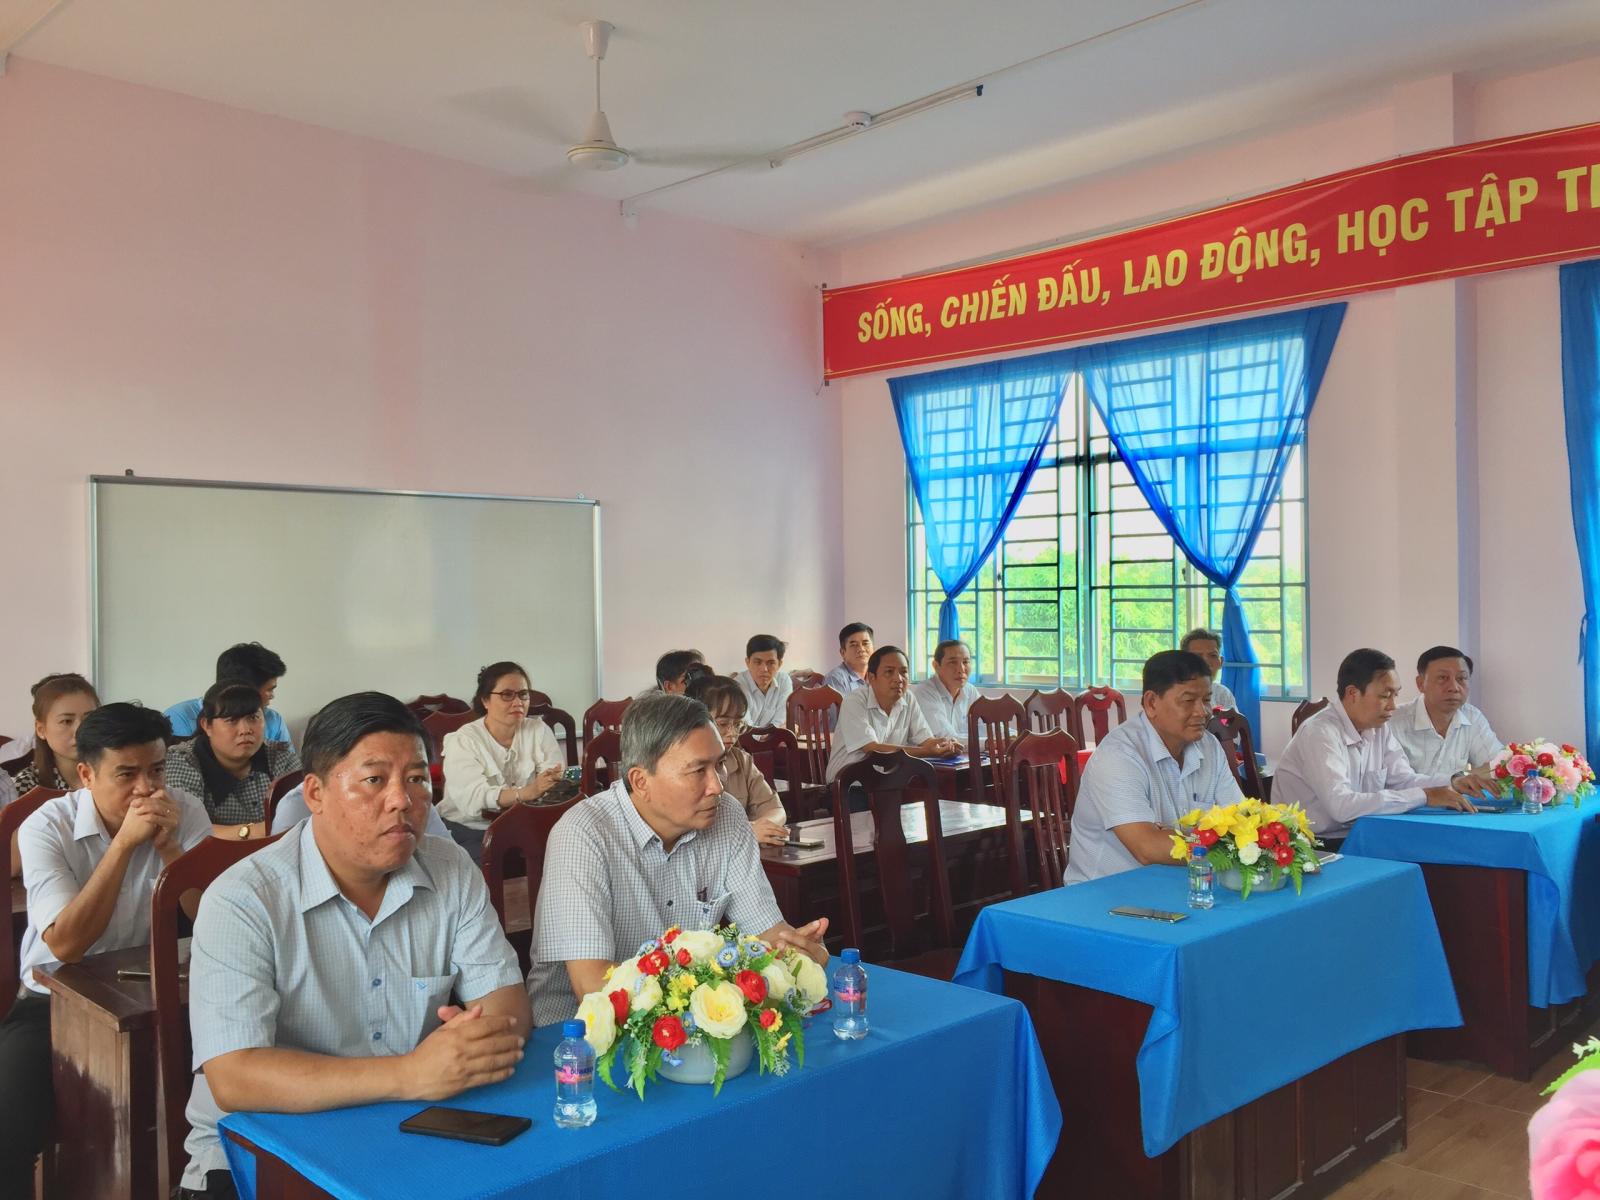  Lễ trao quyết định bổ nhiệm Hiệu phó trường Tiểu học Trần Phú đối với thầy Nguyễn Tiến Trung